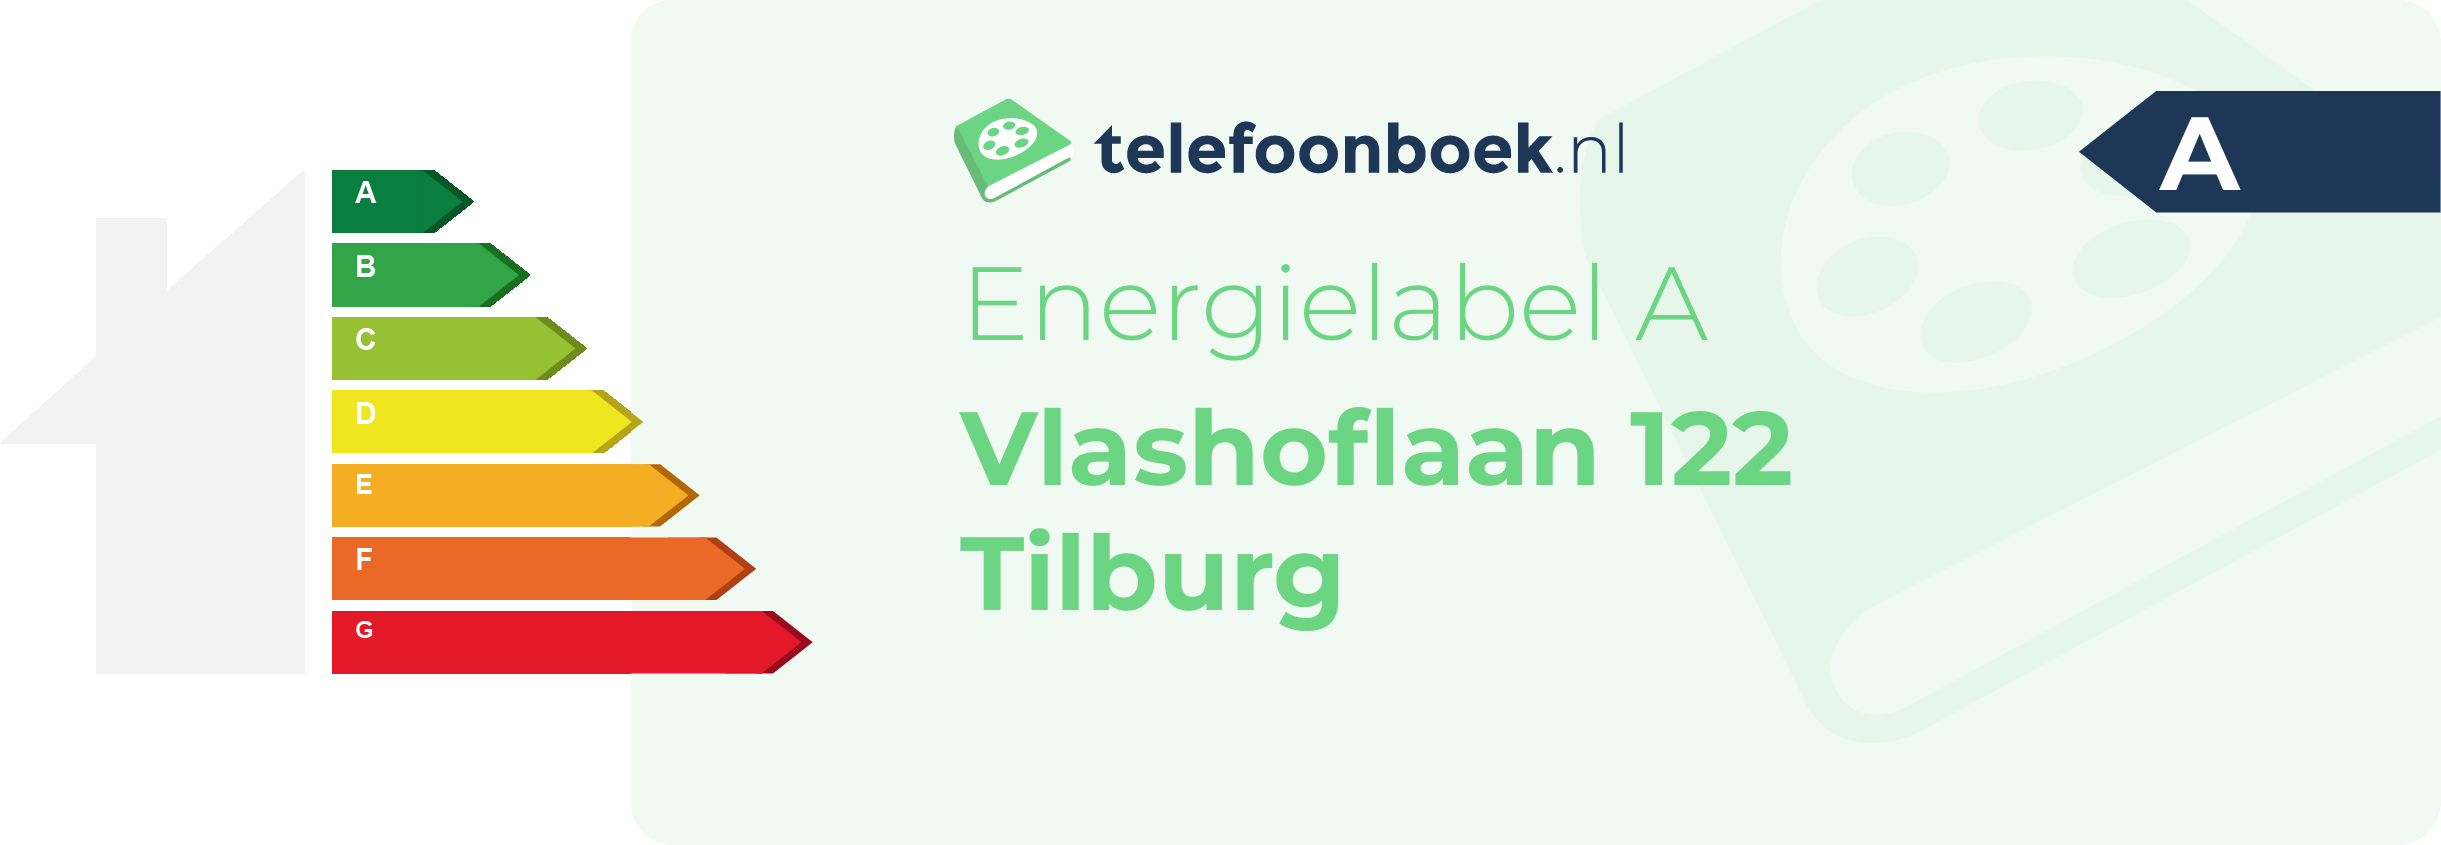 Energielabel Vlashoflaan 122 Tilburg